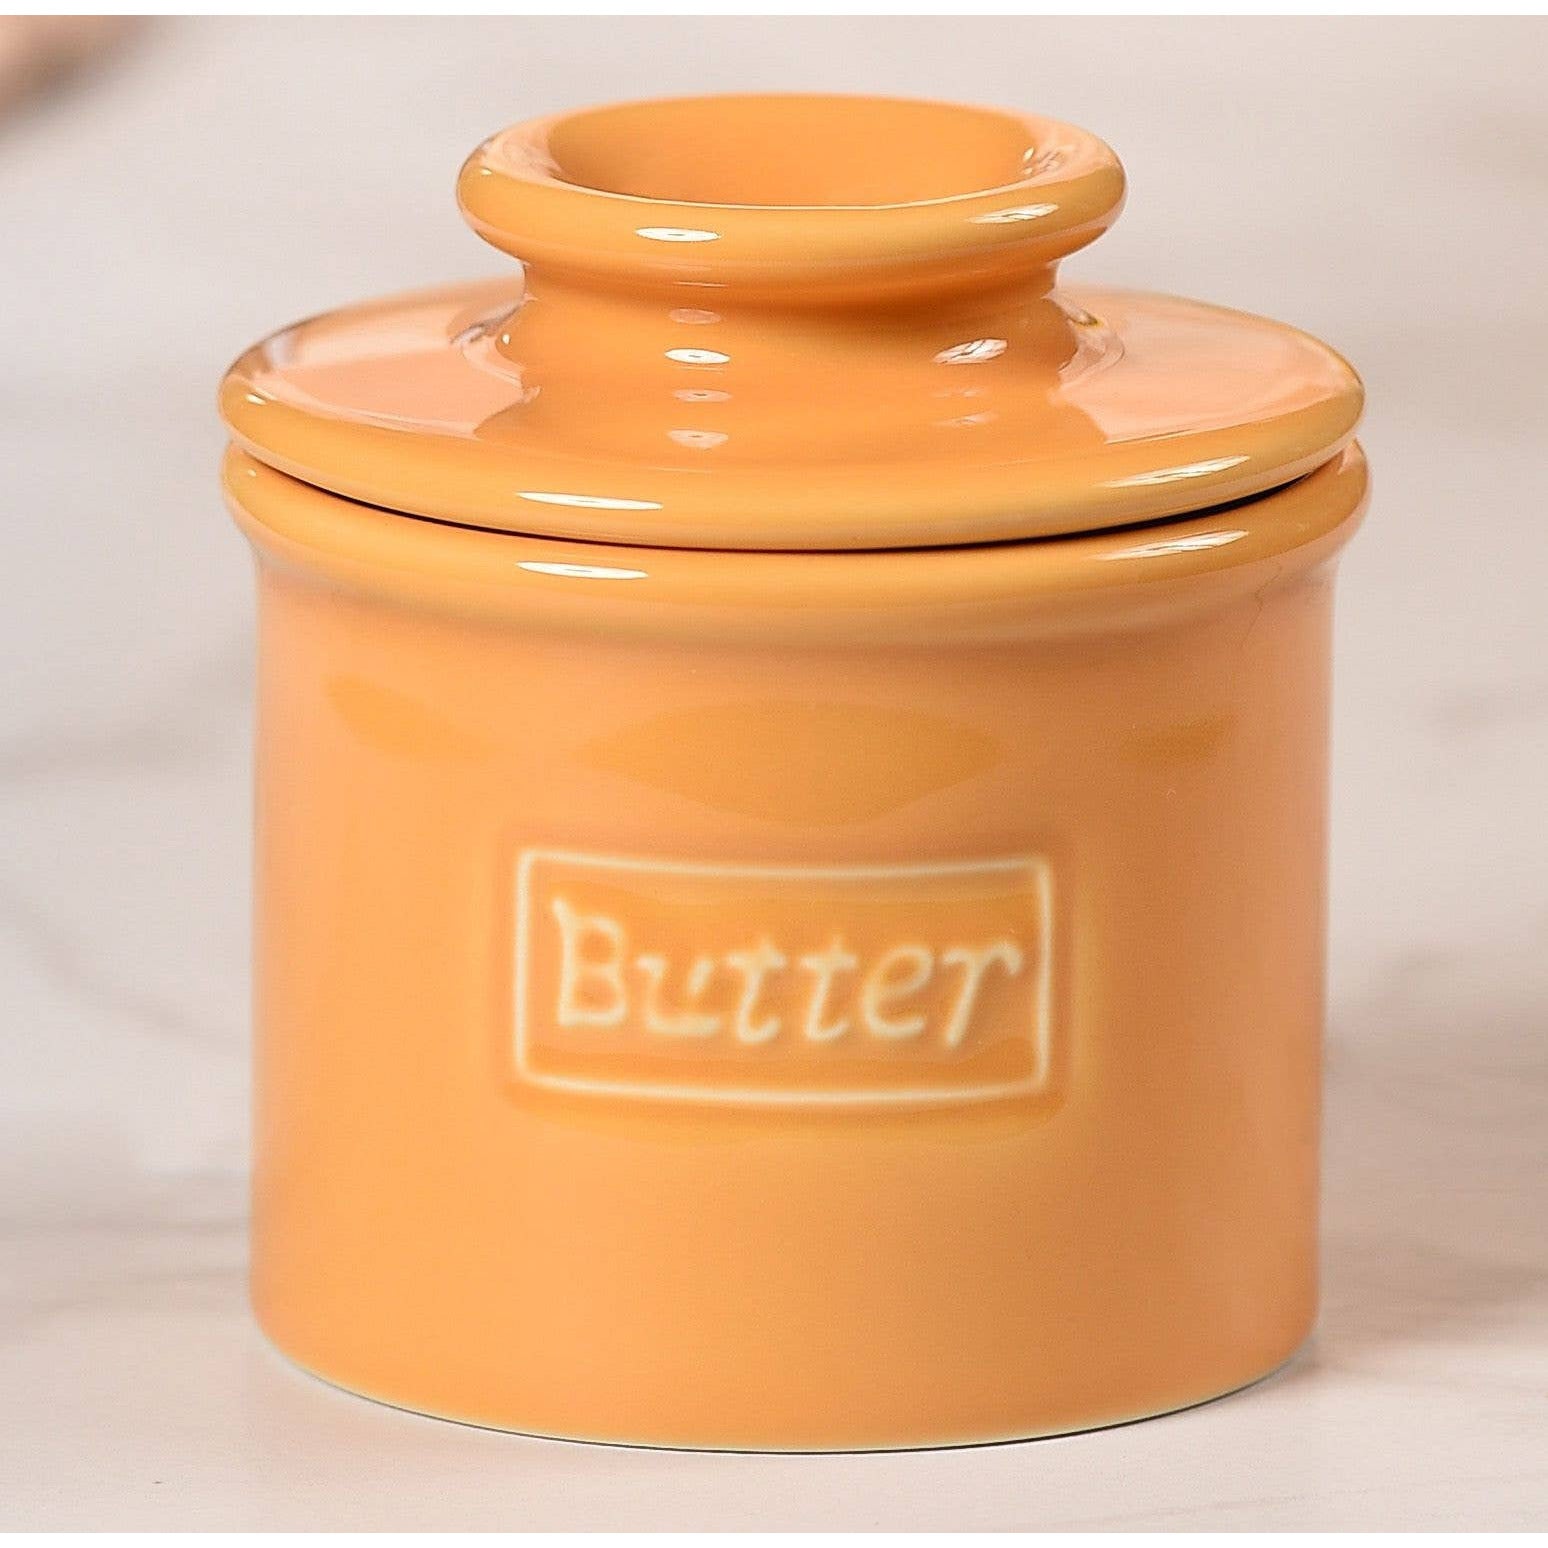 Café Collection Butter Bell Crock - Golden Yellow  The Original Butter Bell crock   